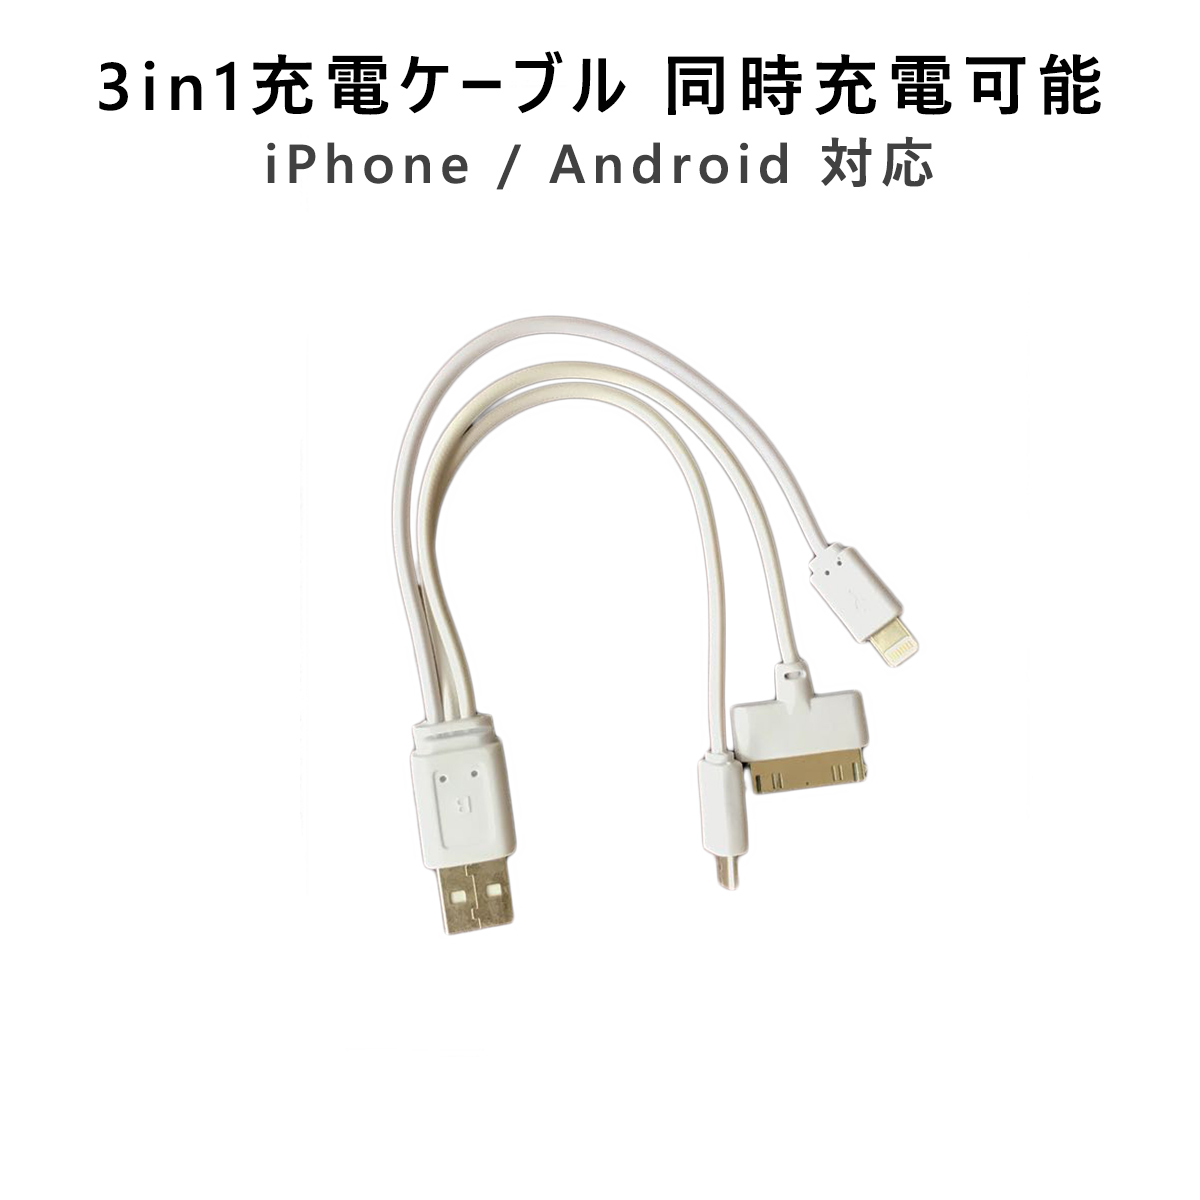 卸売B2B スマホ充電ケーブル 1本3役同時充電 3in1 充電コード microUSB Android iPhone4 iPhne5 iPhone6 iPhone7対応 SDM便送料無料 1ヶ月保証 K&M